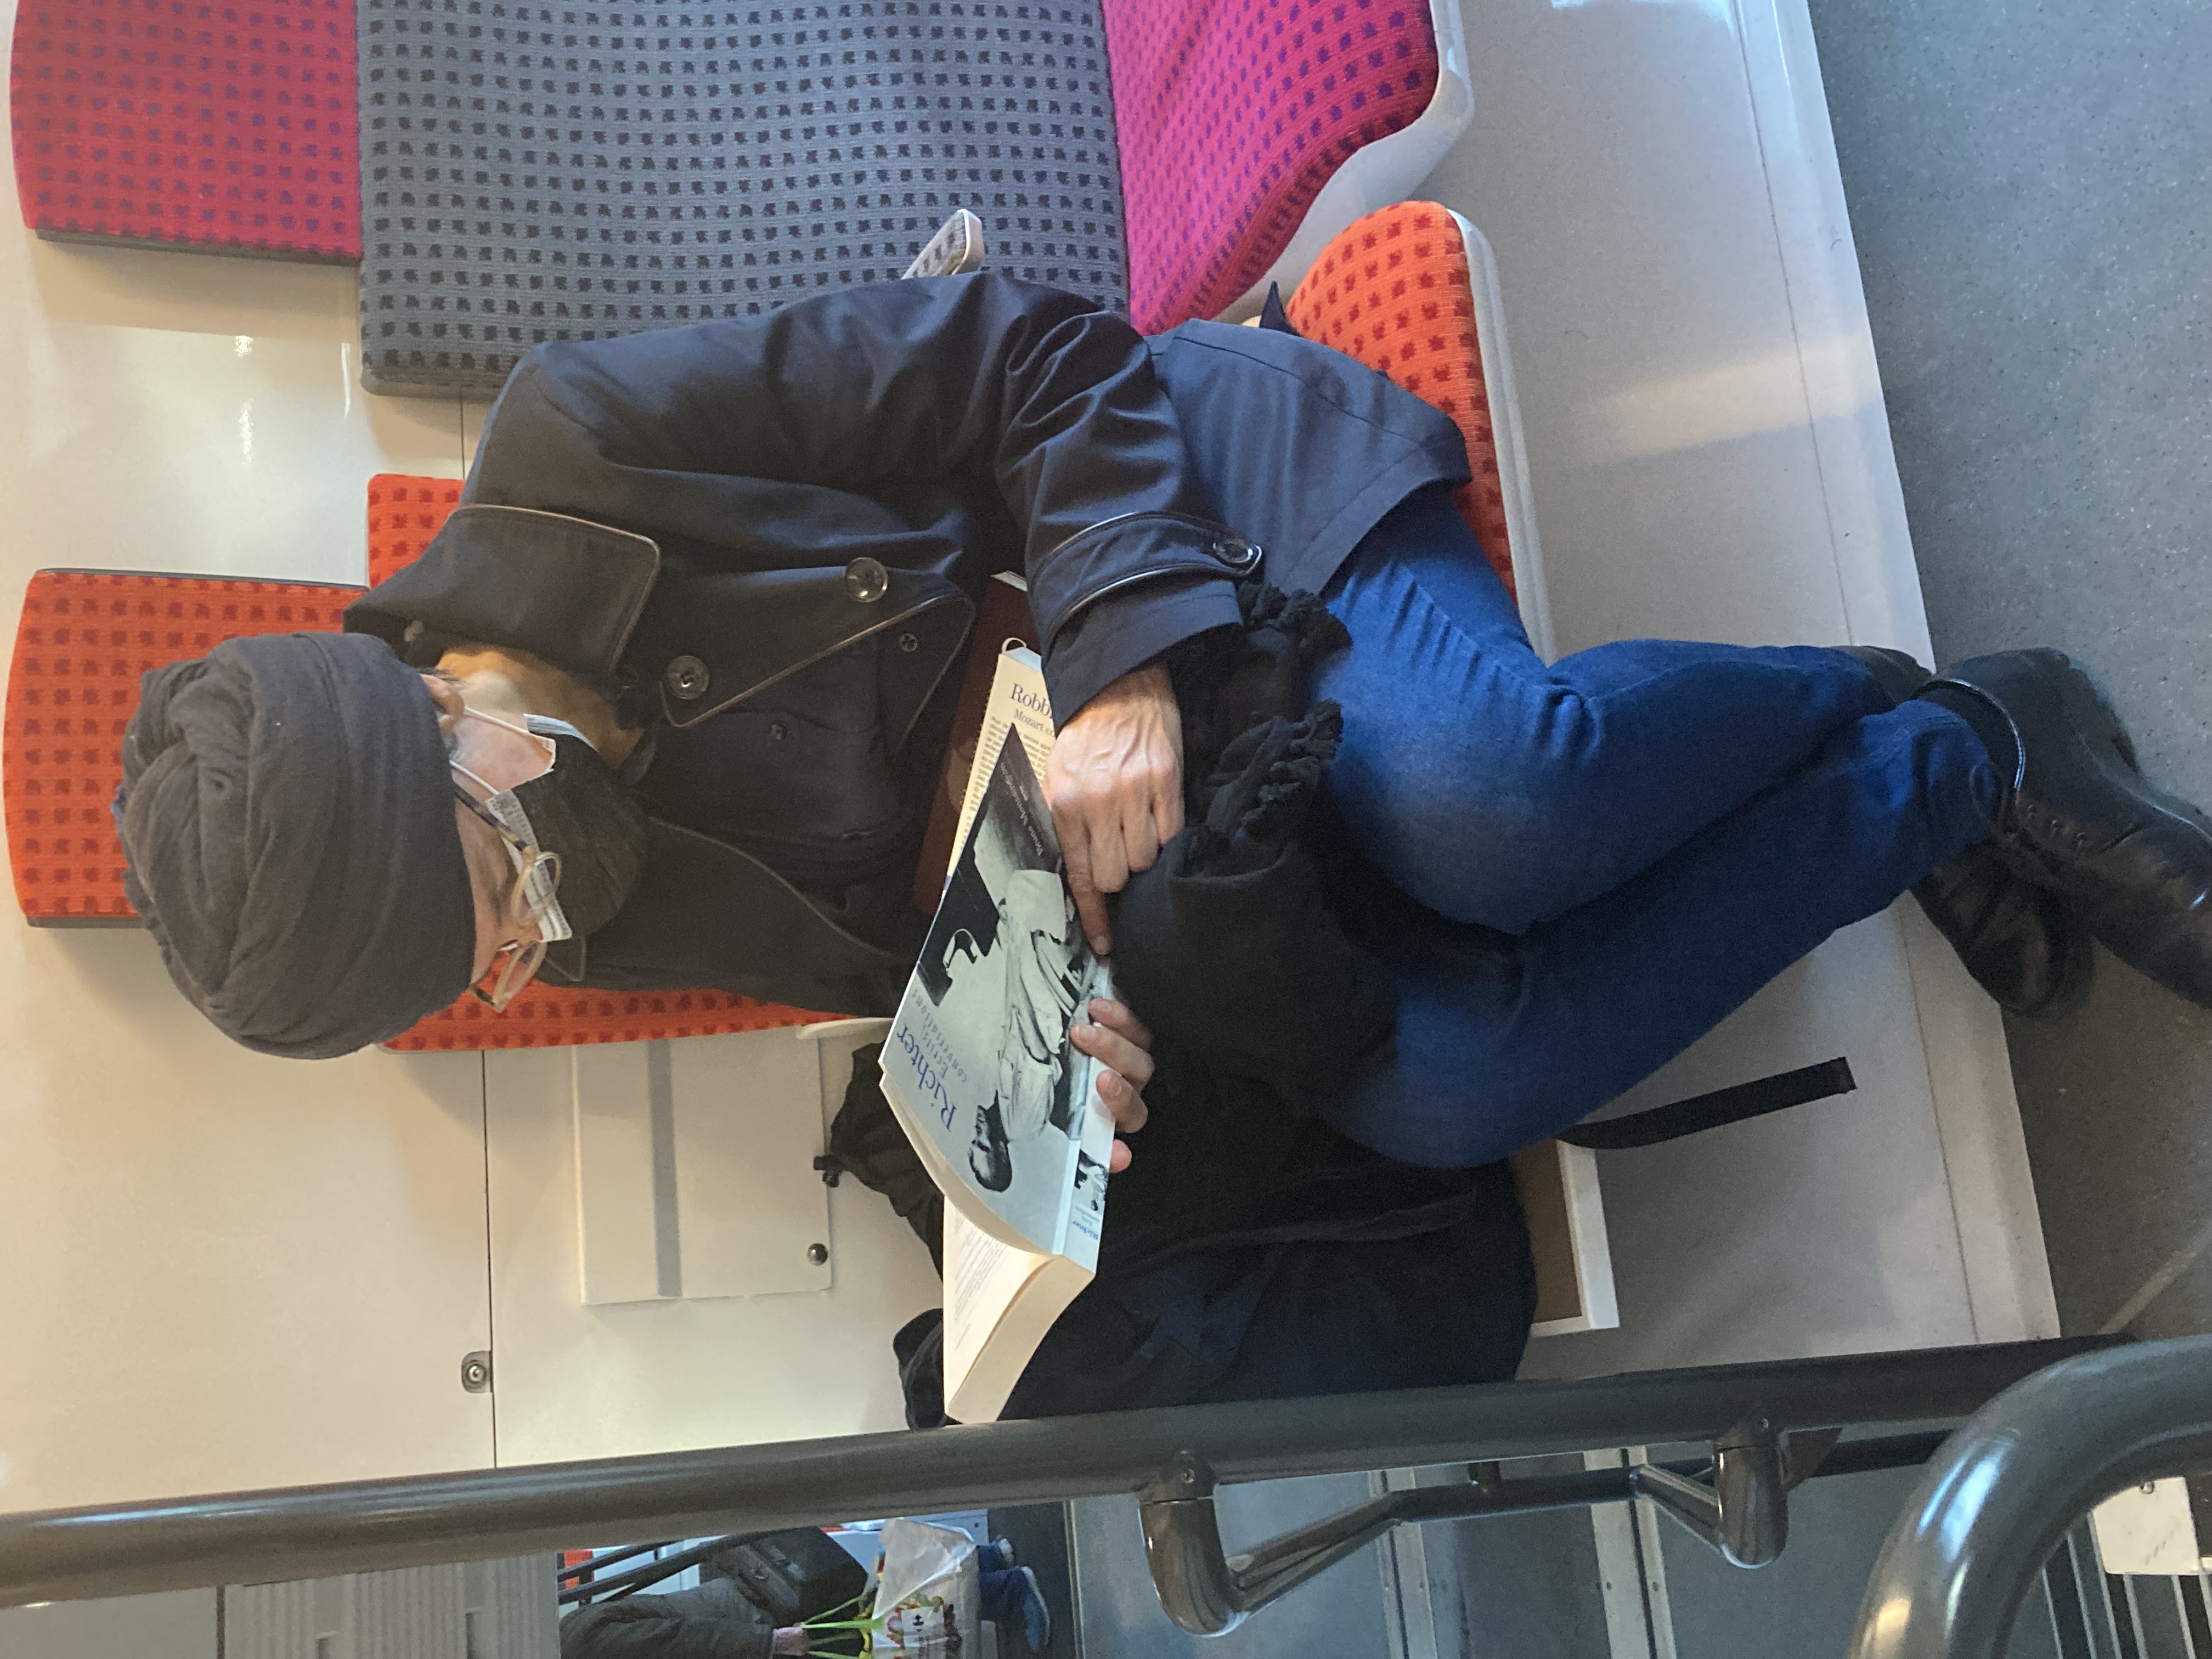 Femme dans le train lisant Richter